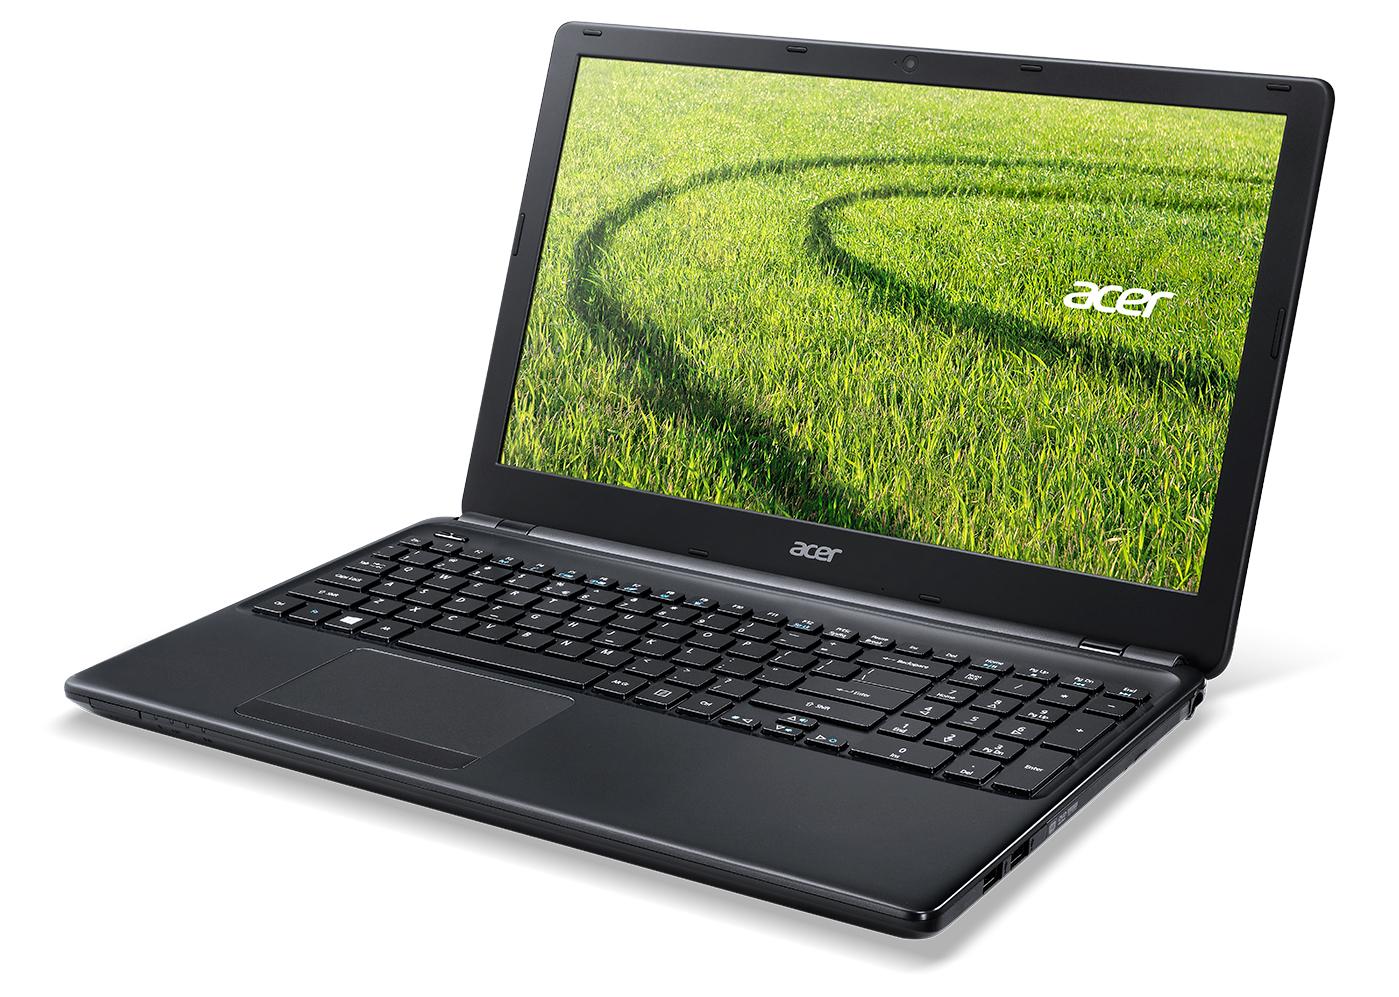 Laptop giá rẻ Acer E1 432 gọn nhẹ cấu hình tốt